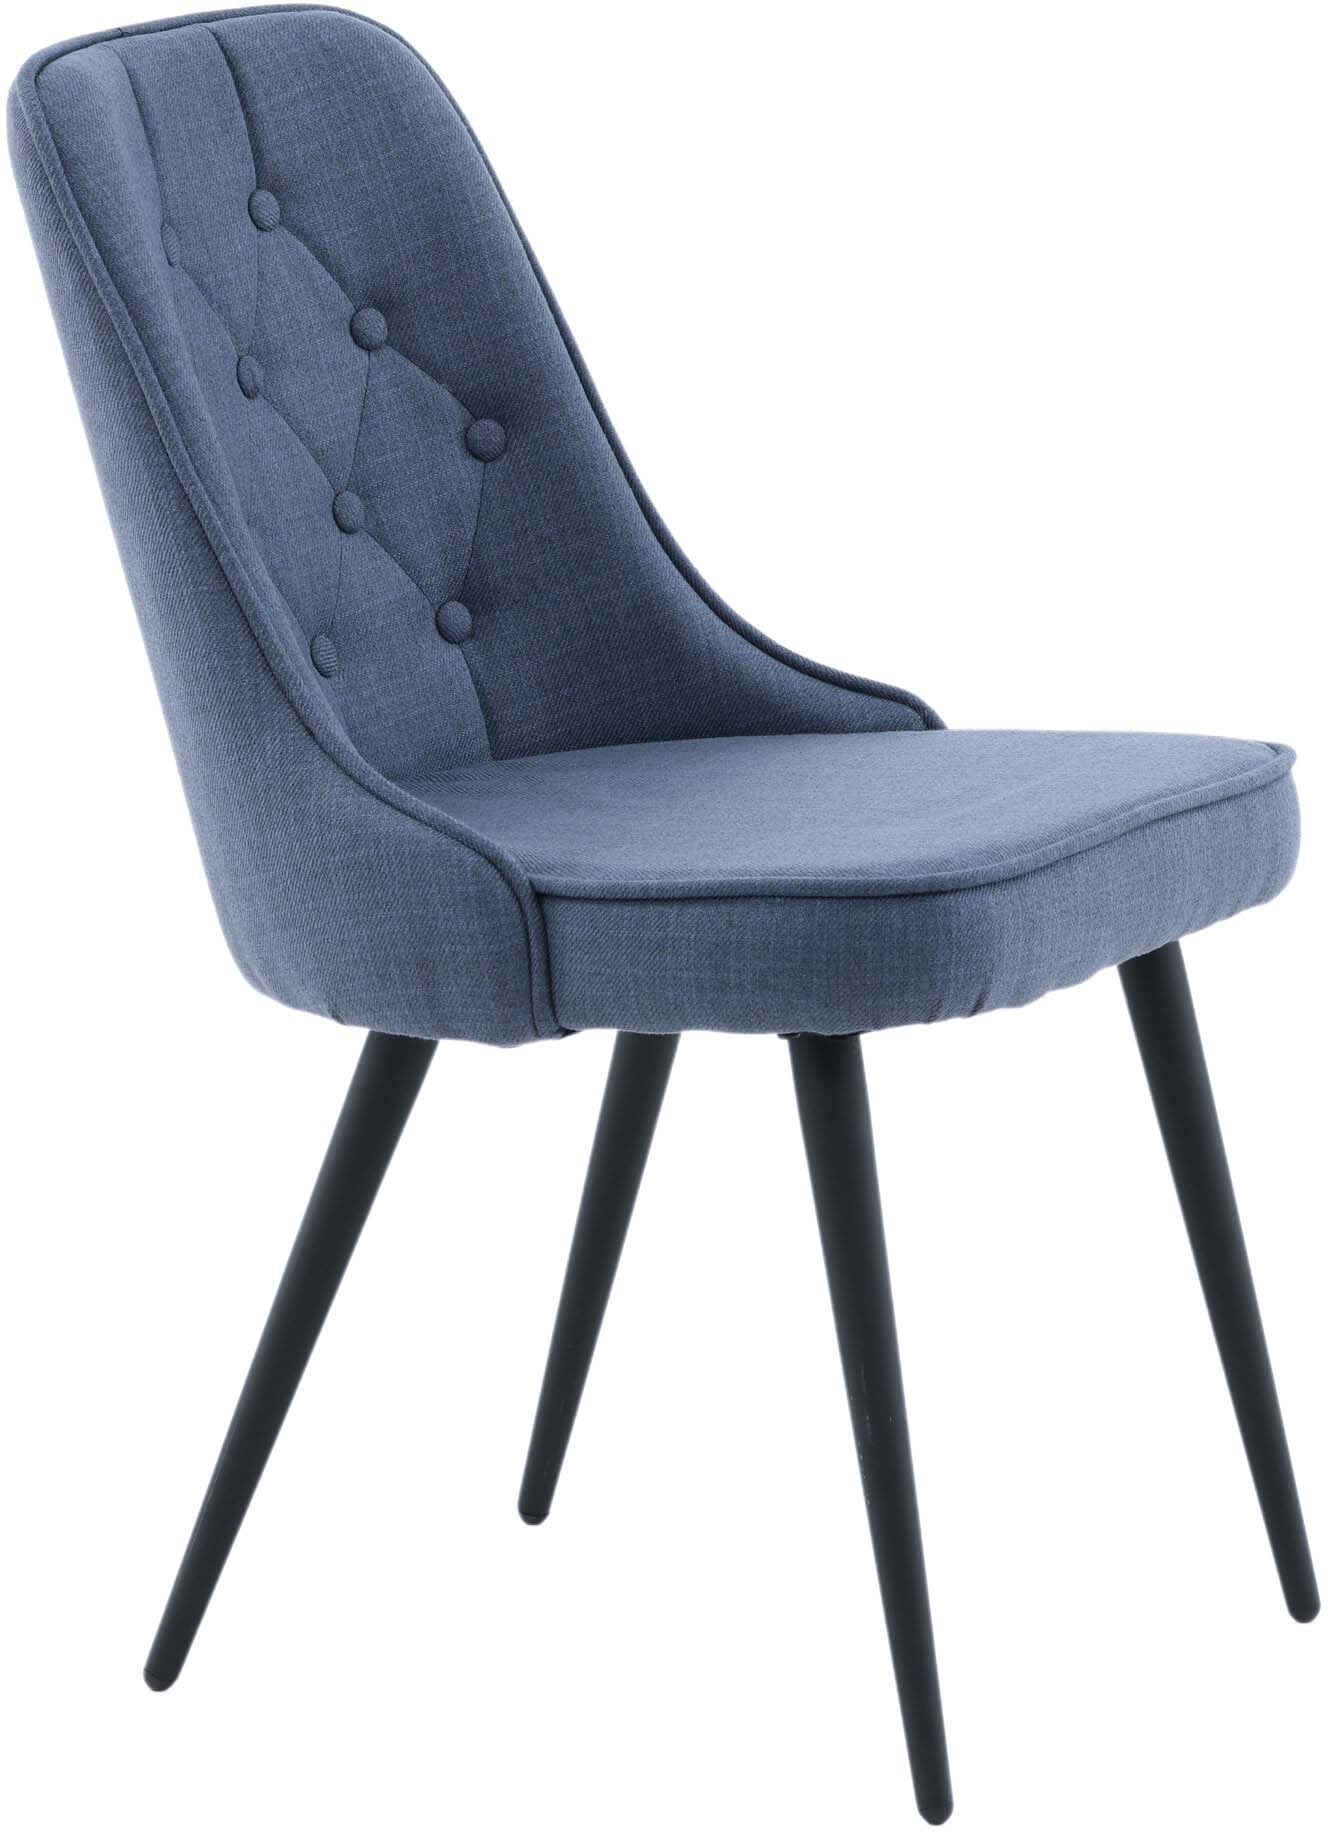 Velvet Deluxe Stuhl in Blau / Schwarz präsentiert im Onlineshop von KAQTU Design AG. Stuhl ist von Venture Home